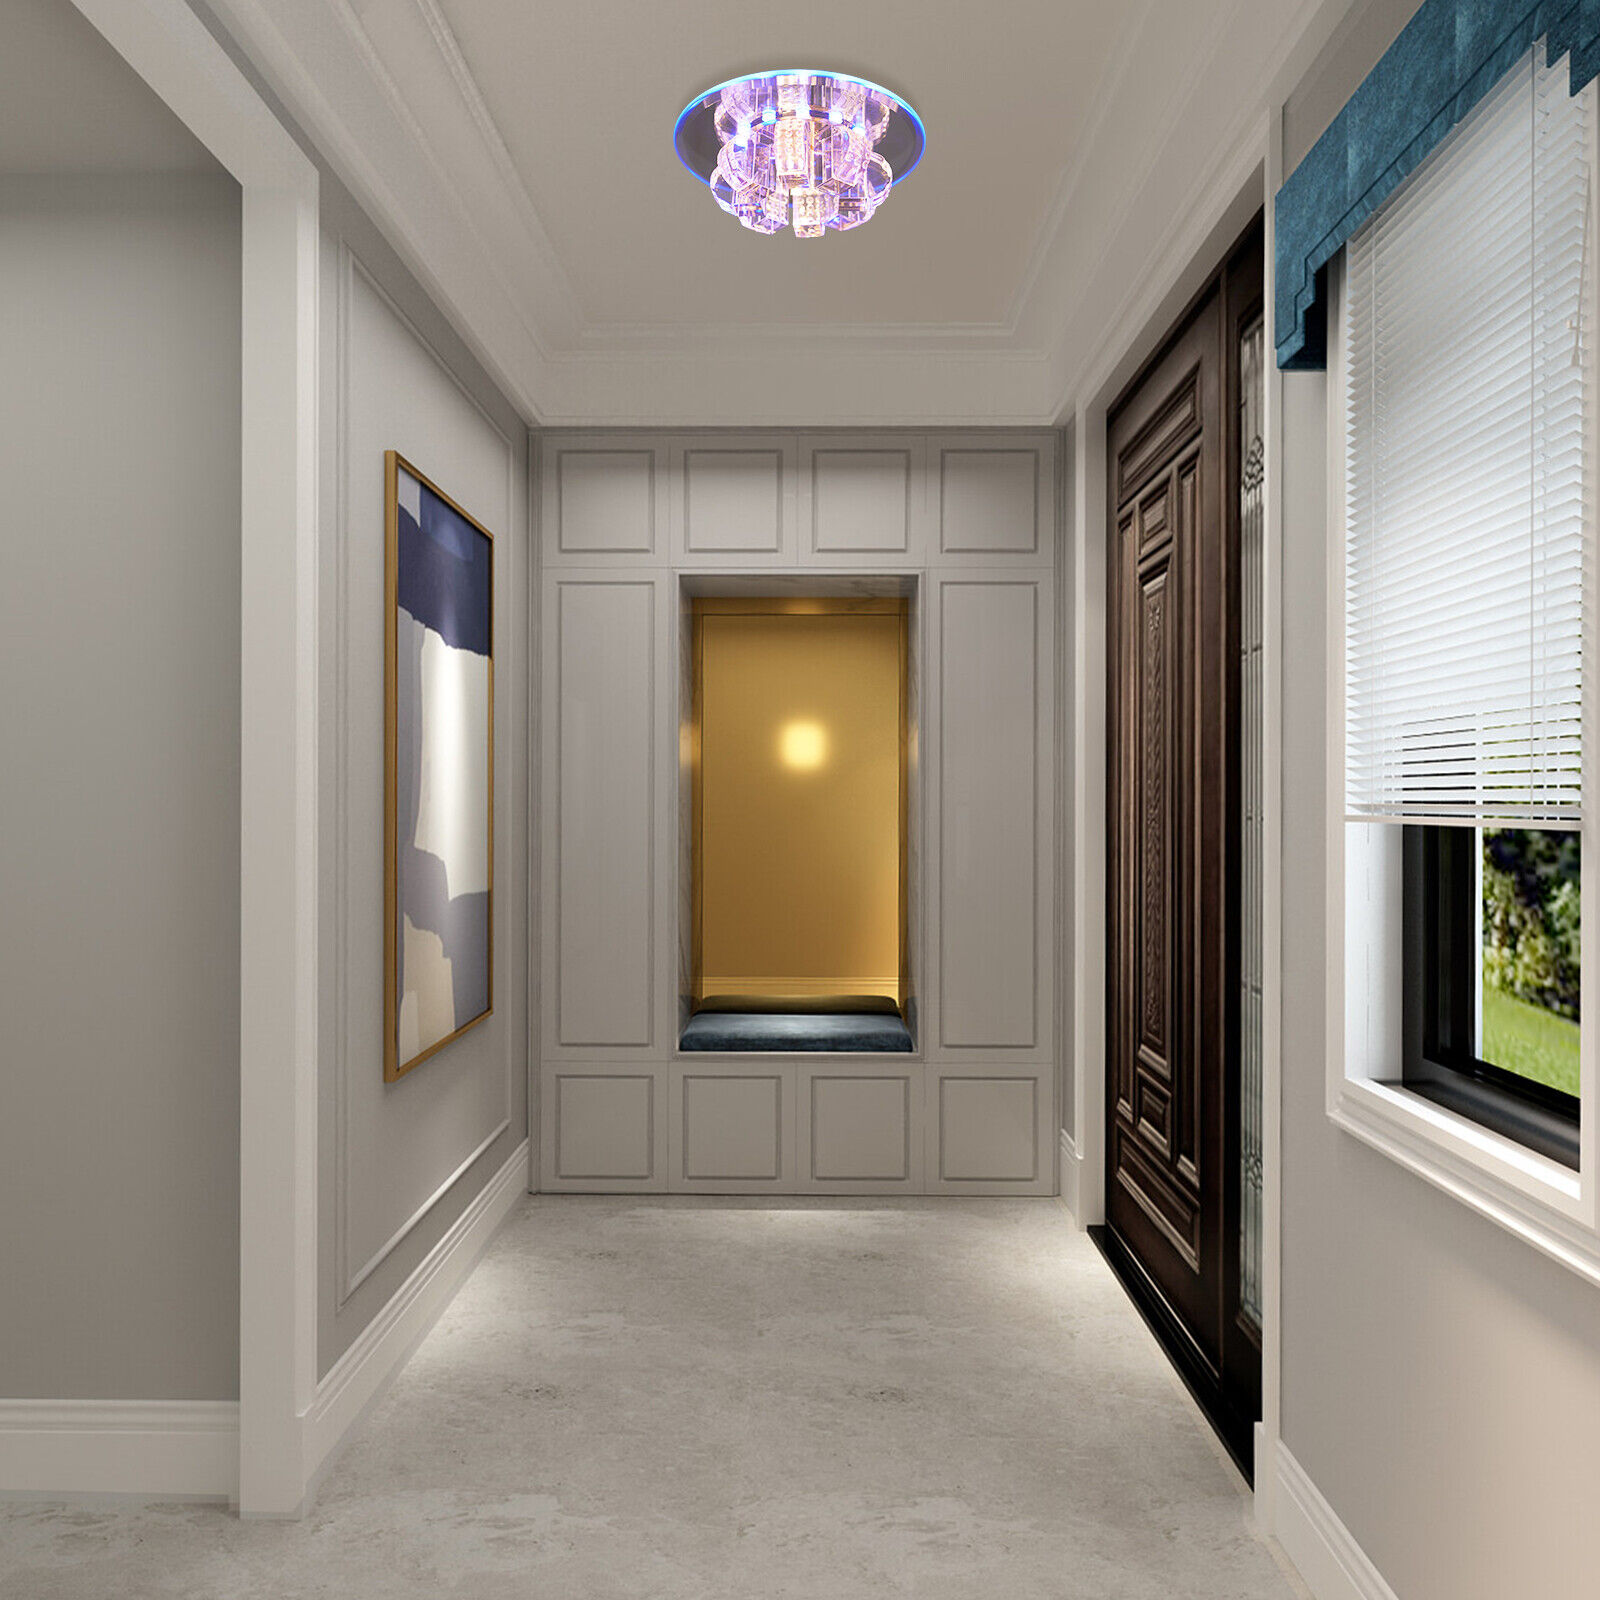 LED Crystal Ceiling Light Luxury Chandelier Pendant Lamp Flush Mount Home Decor